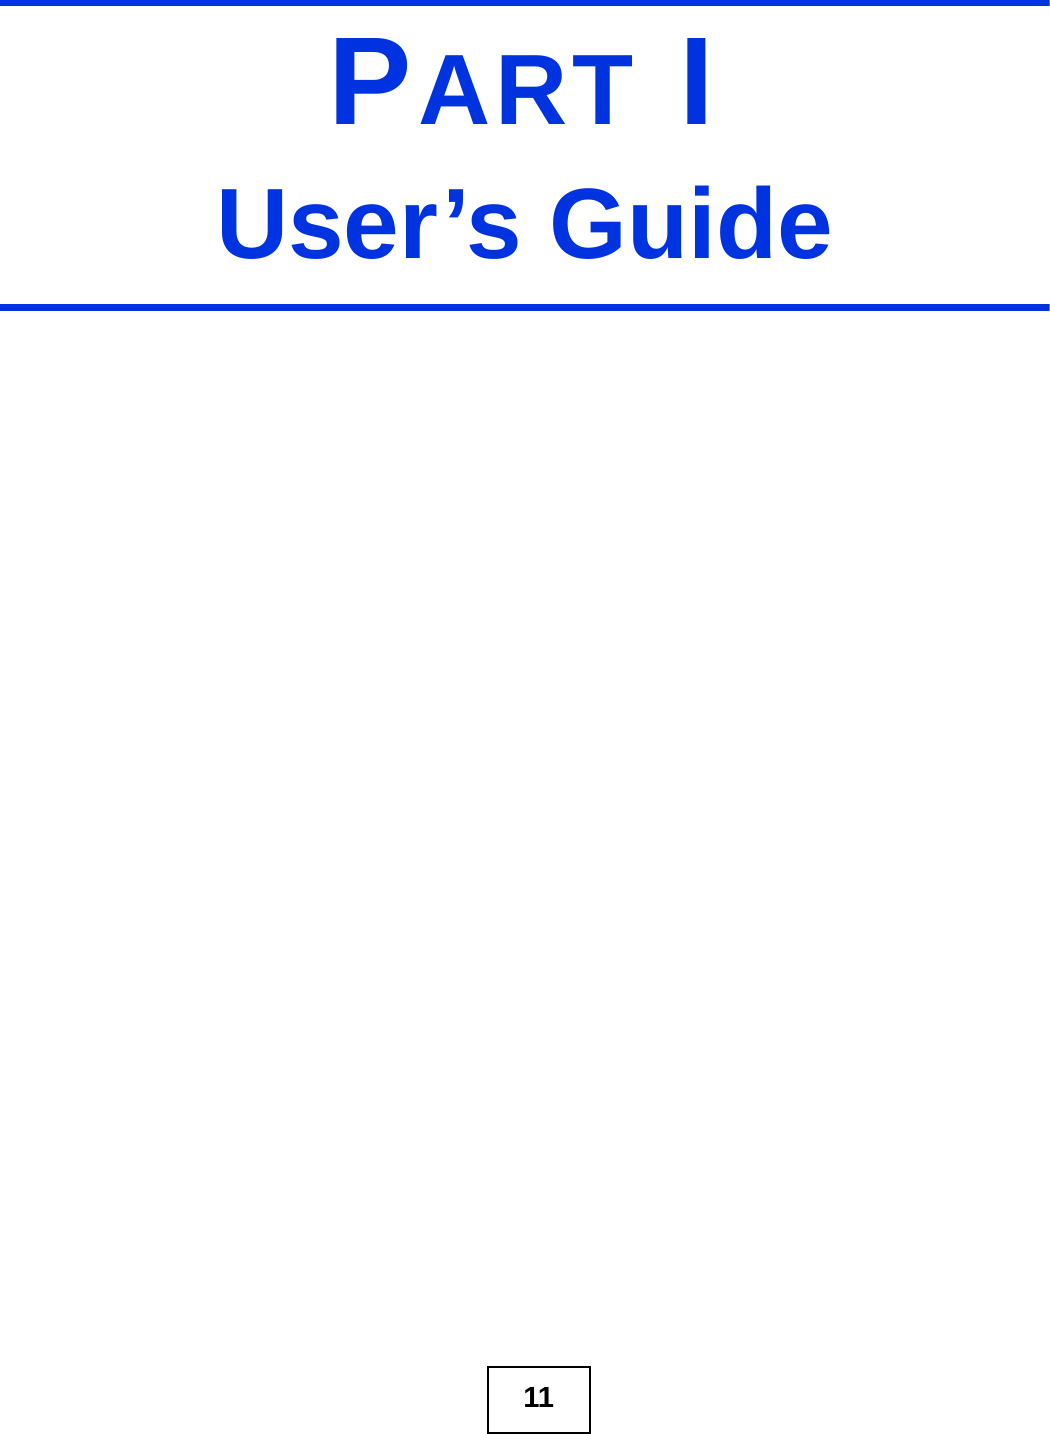 11PART IUser’s Guide 